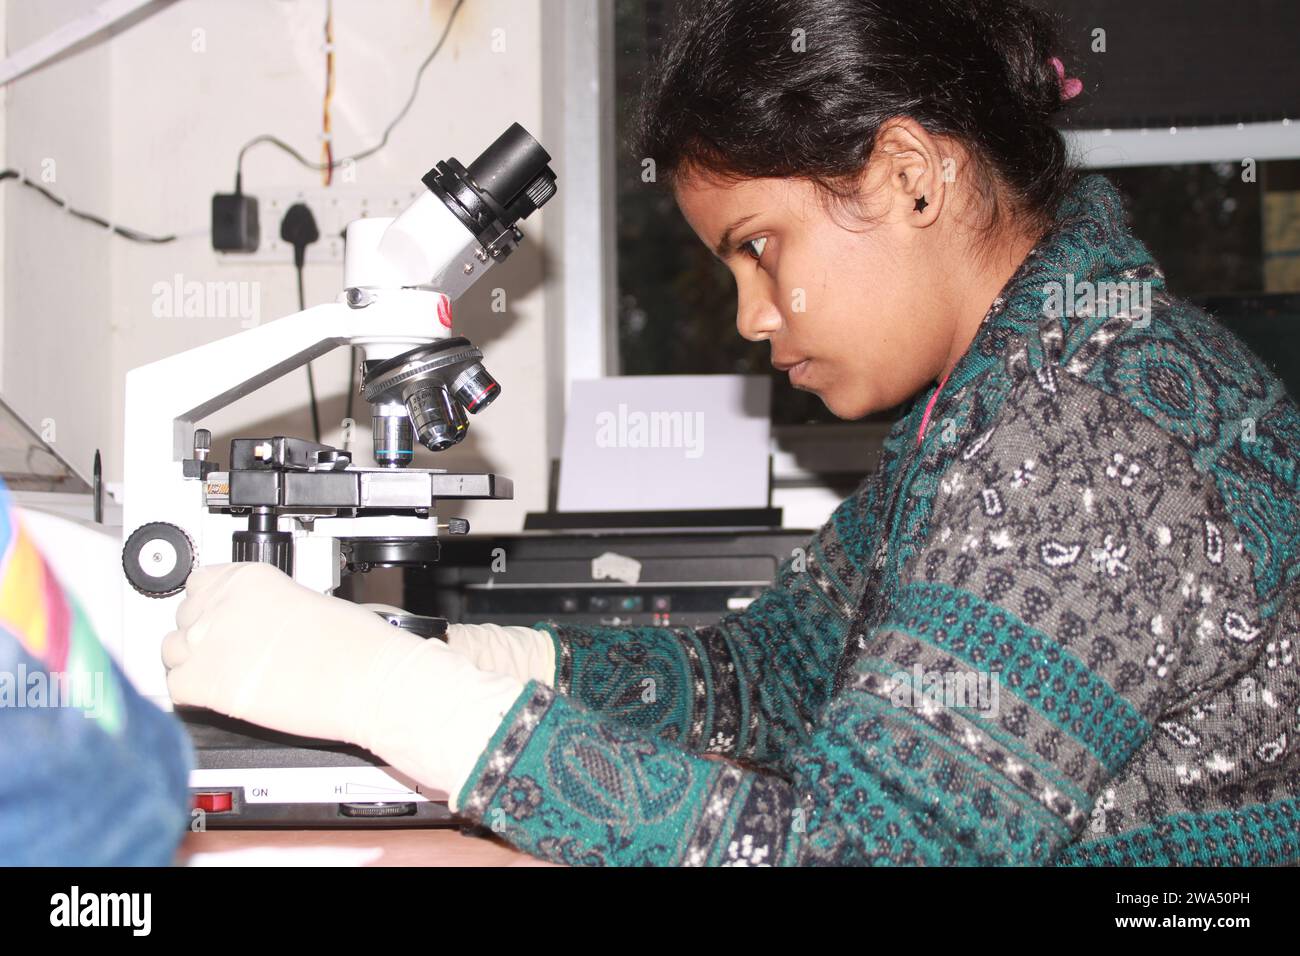 Lady pathologist examining with microscope. India Stock Photo